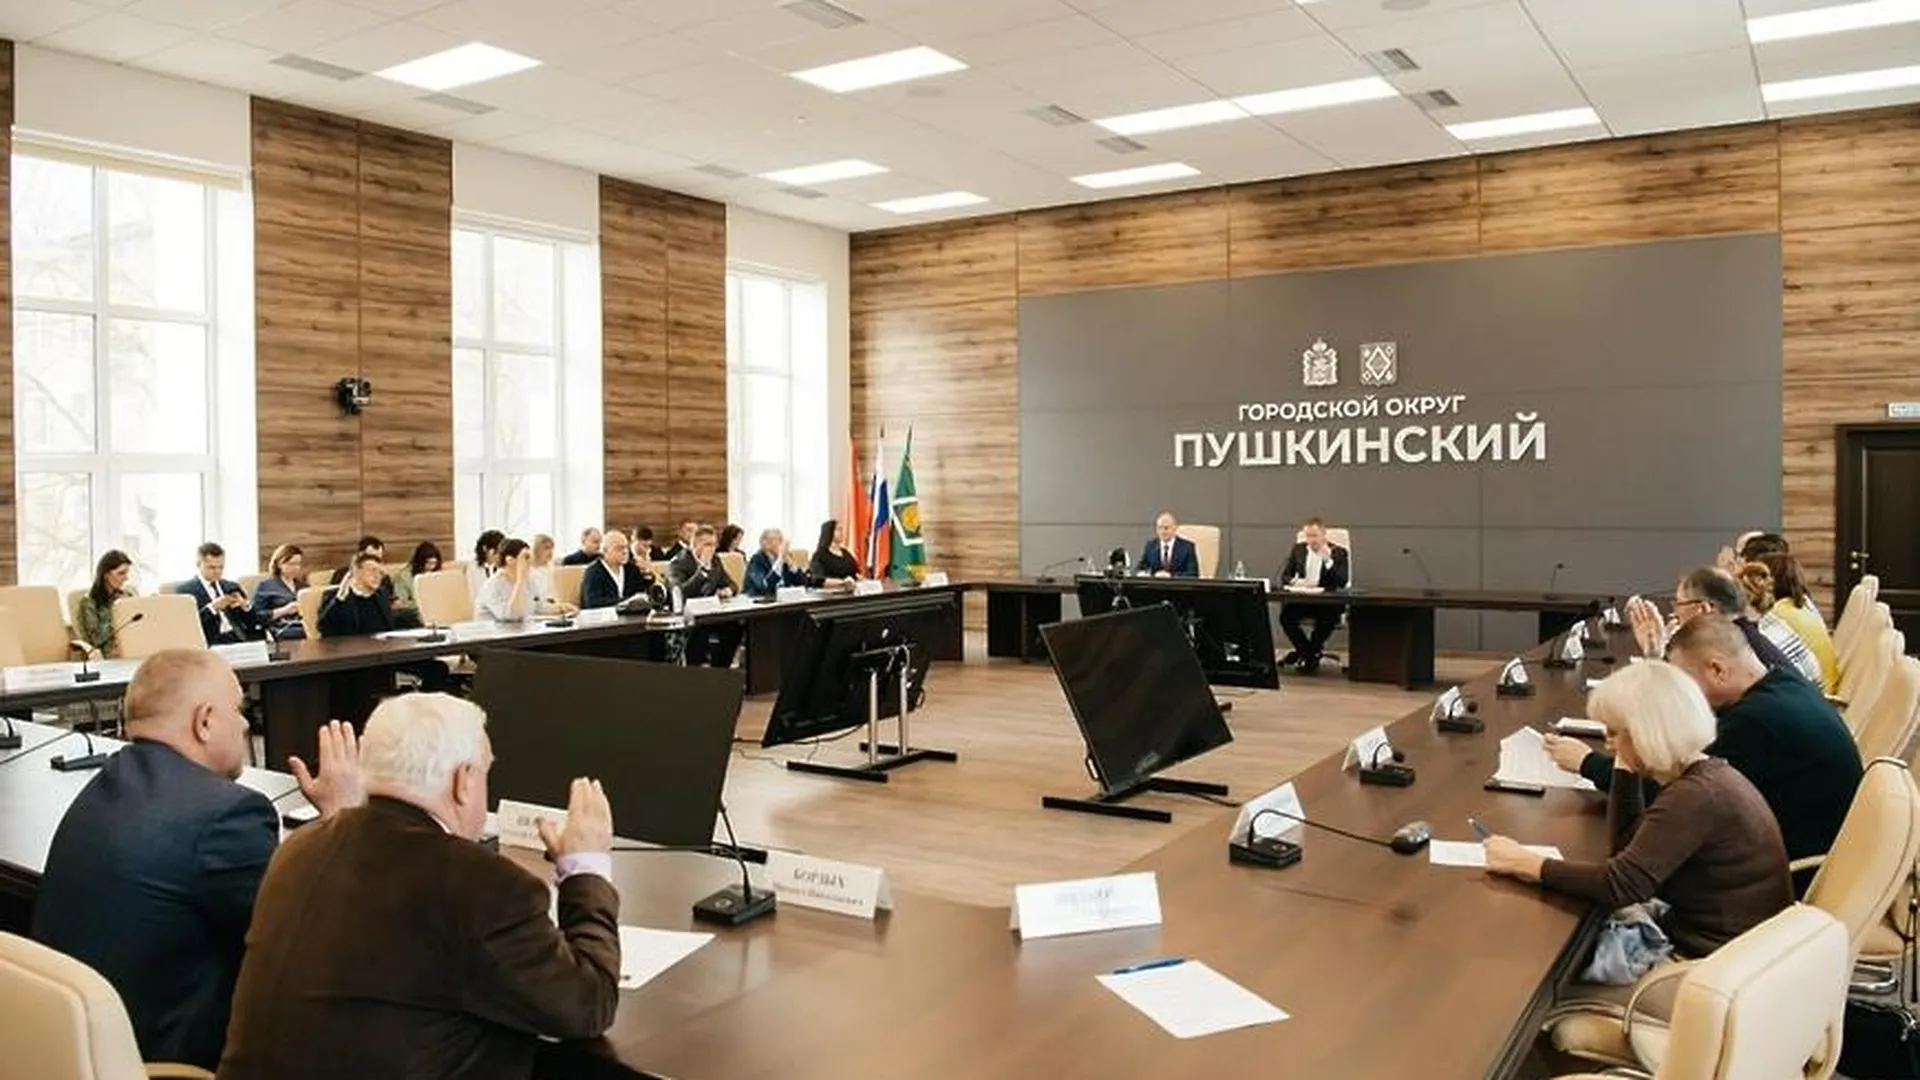 Совет депутатов Городского округа Пушкинский заменит председателей